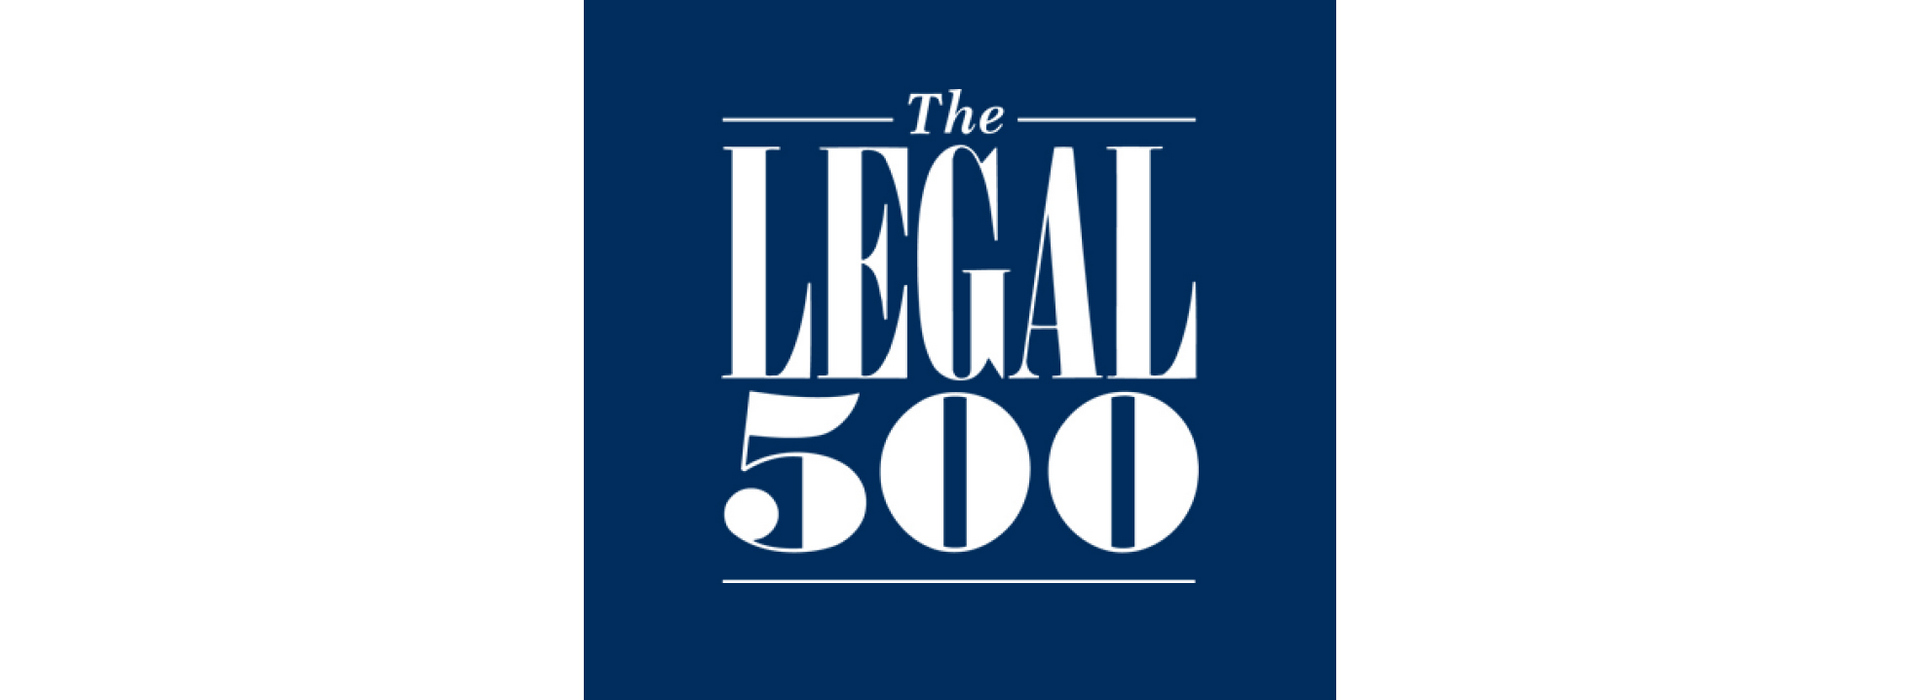 GOLAW здобула топові позиції у престижному міжнародному рейтингу The Legal 500 Emea 2022